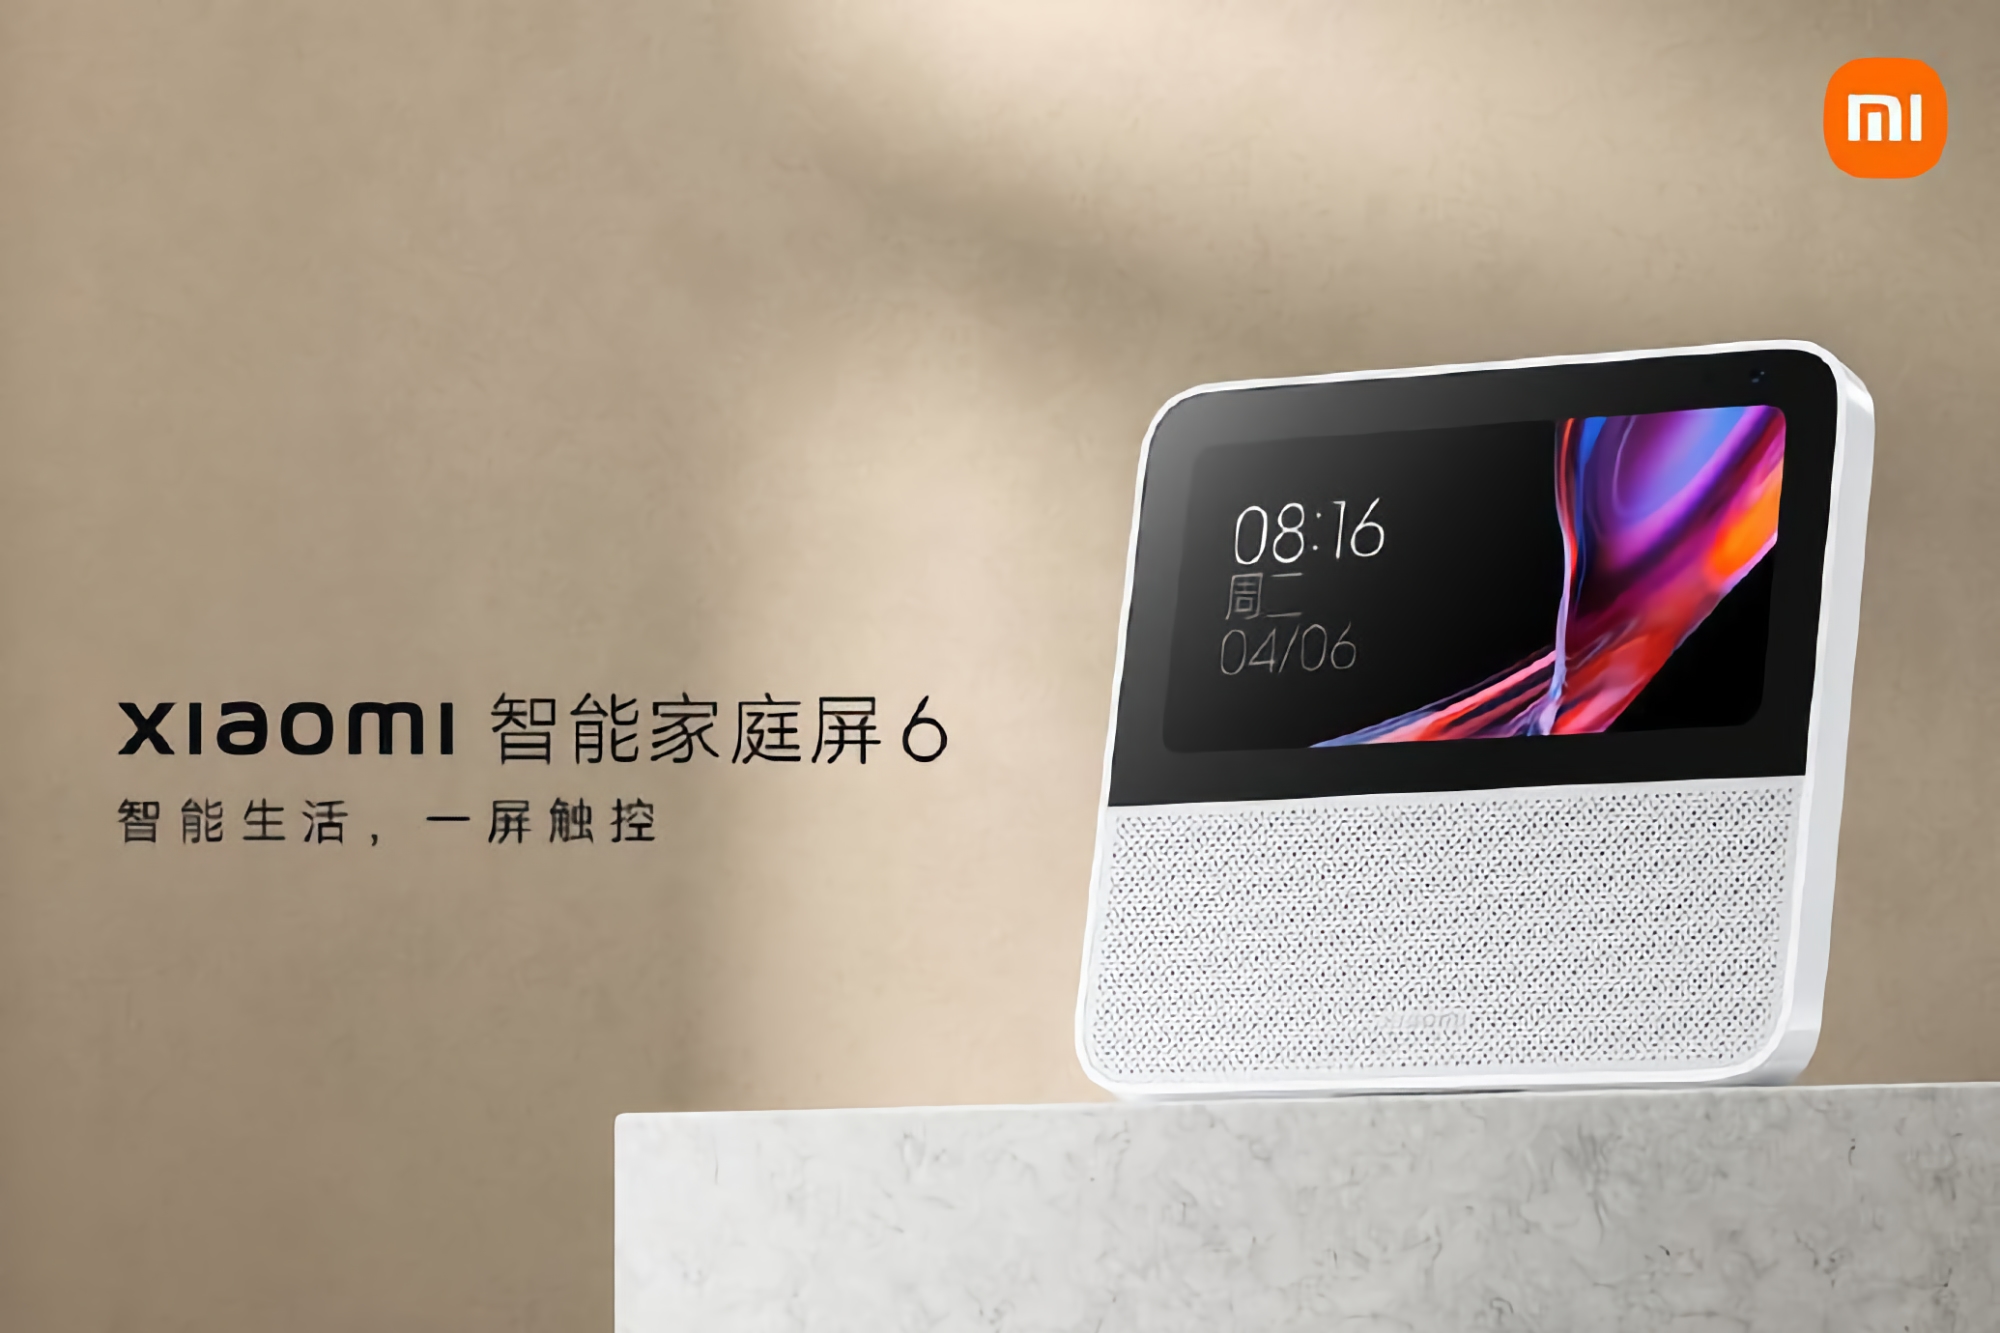 Xiaomi представила Smart Home Display 6: дисплей на 6 дюймів, камера на 2 МП та вбудований голосовий помічник за $52